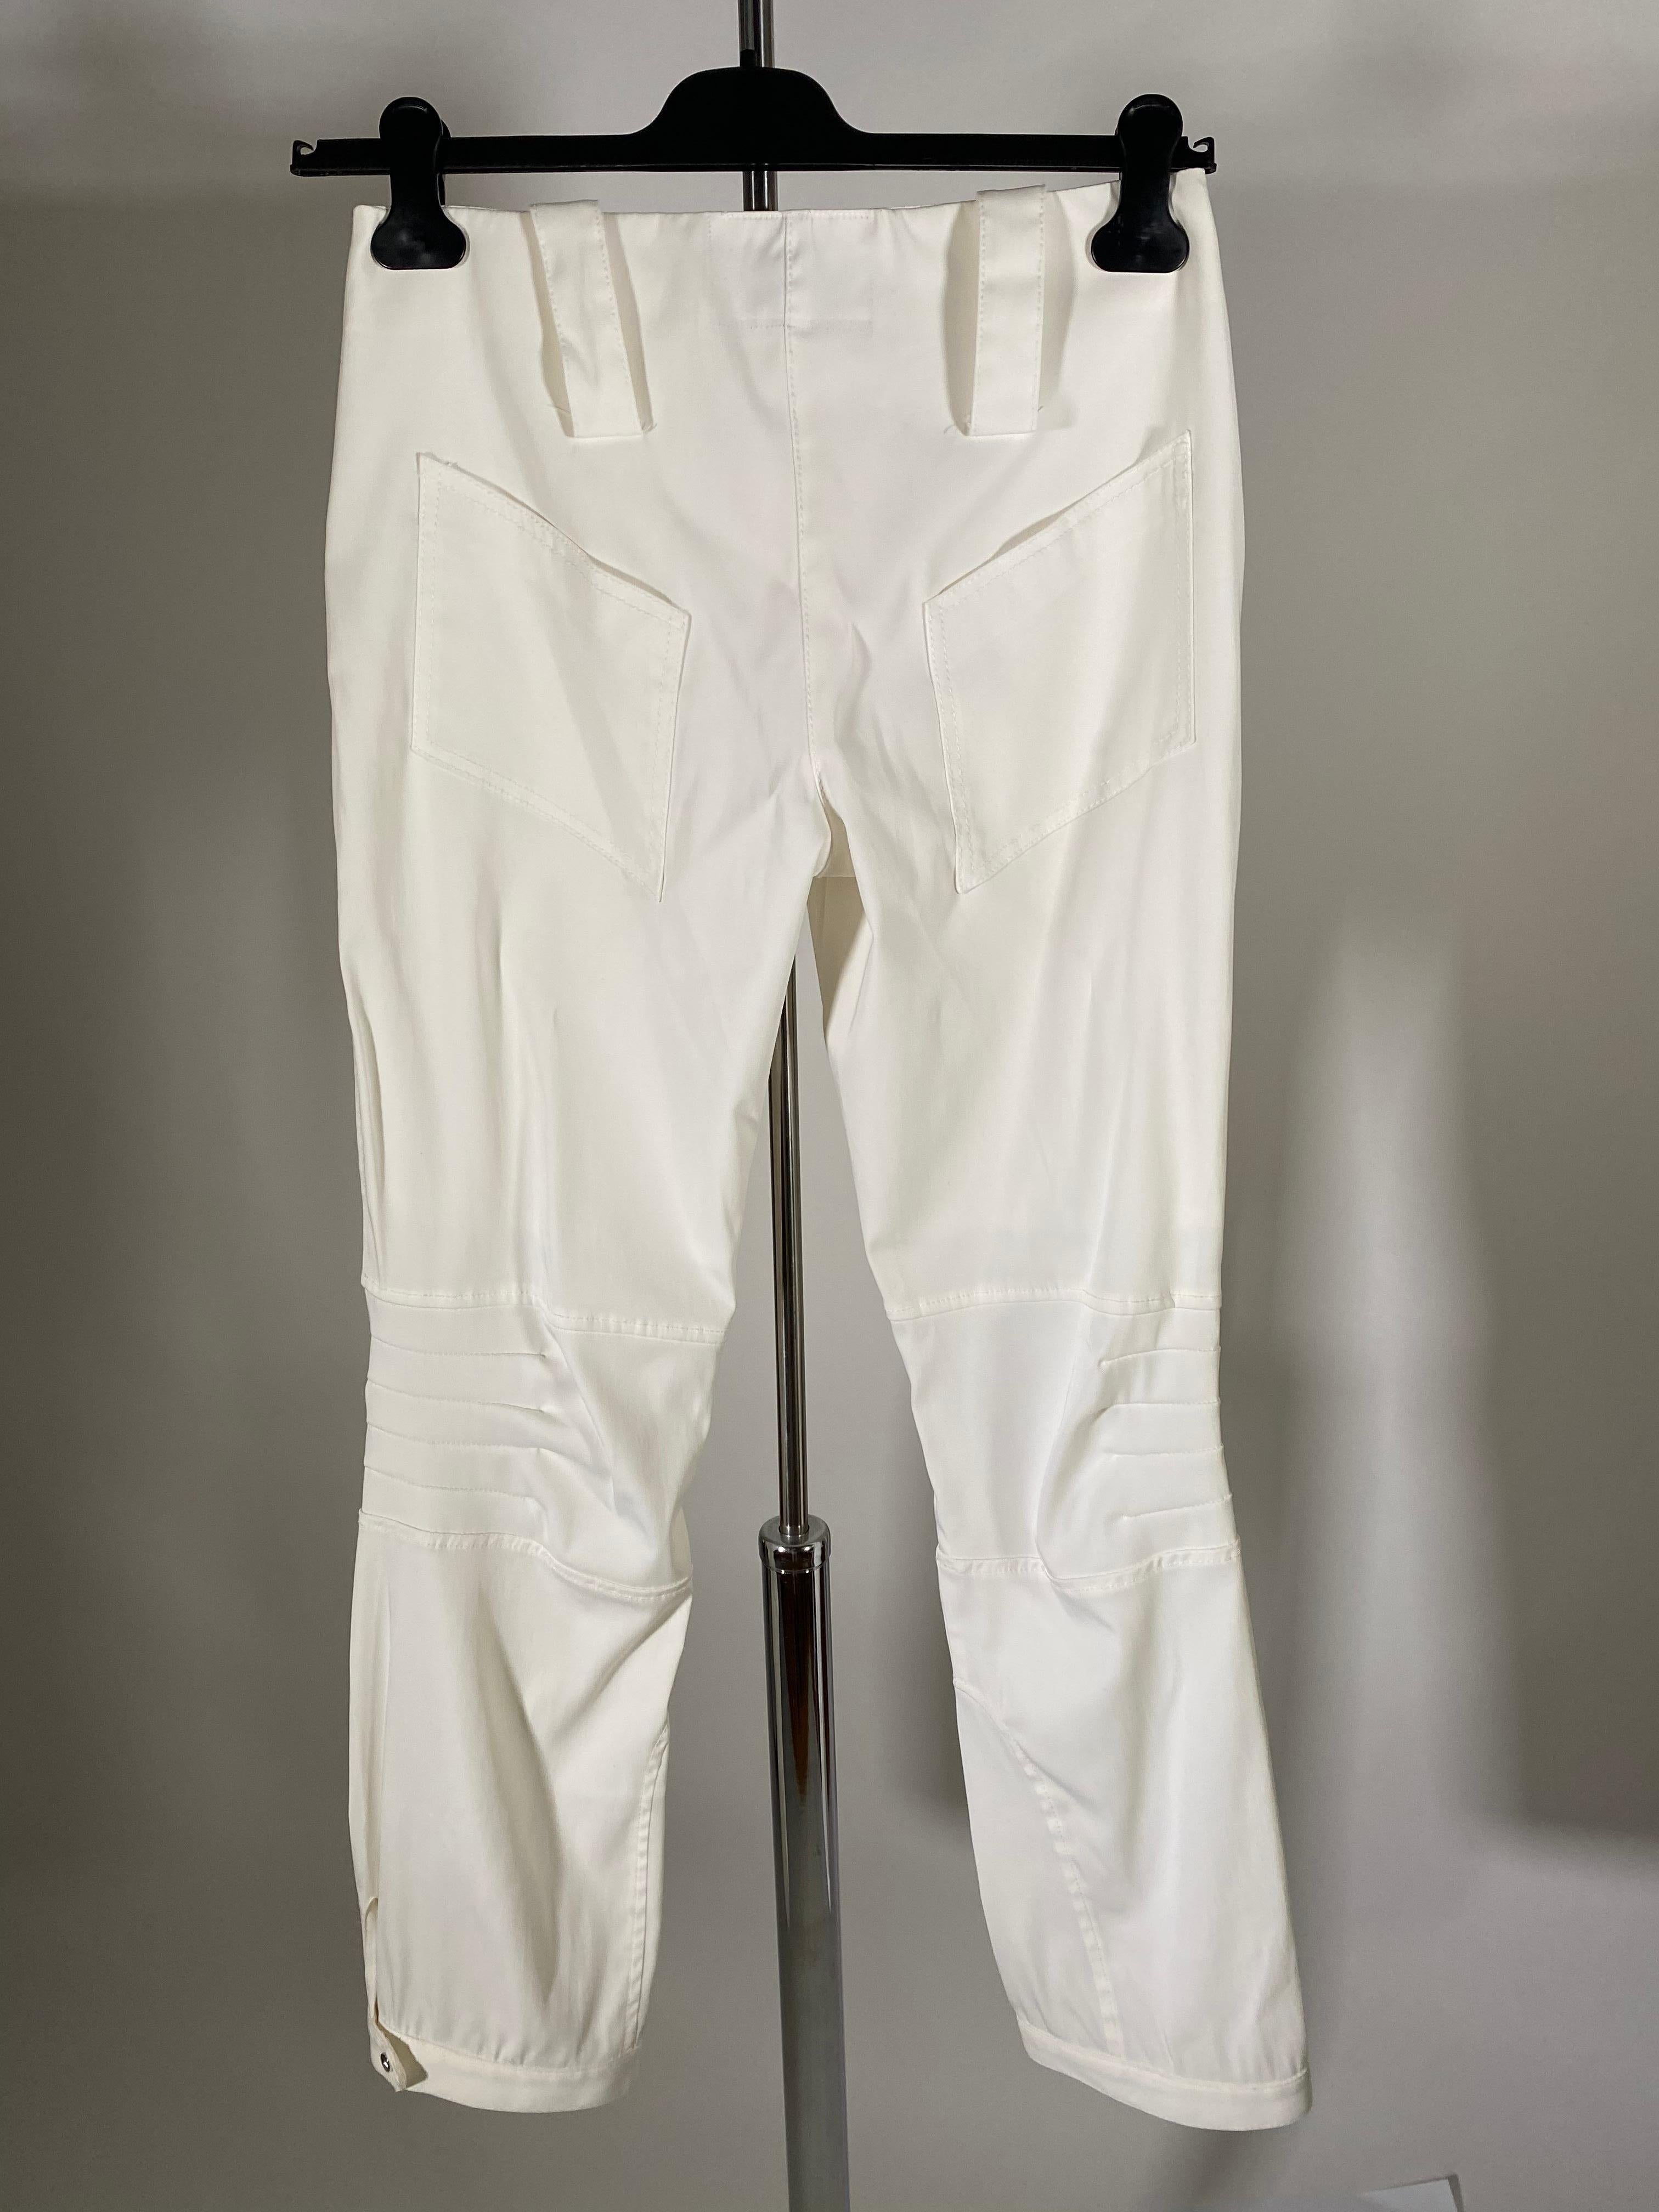 Vintage Thierry Mugler weiße Hose
Neu mit Tags
Ungefähre Maße 
Taille 30